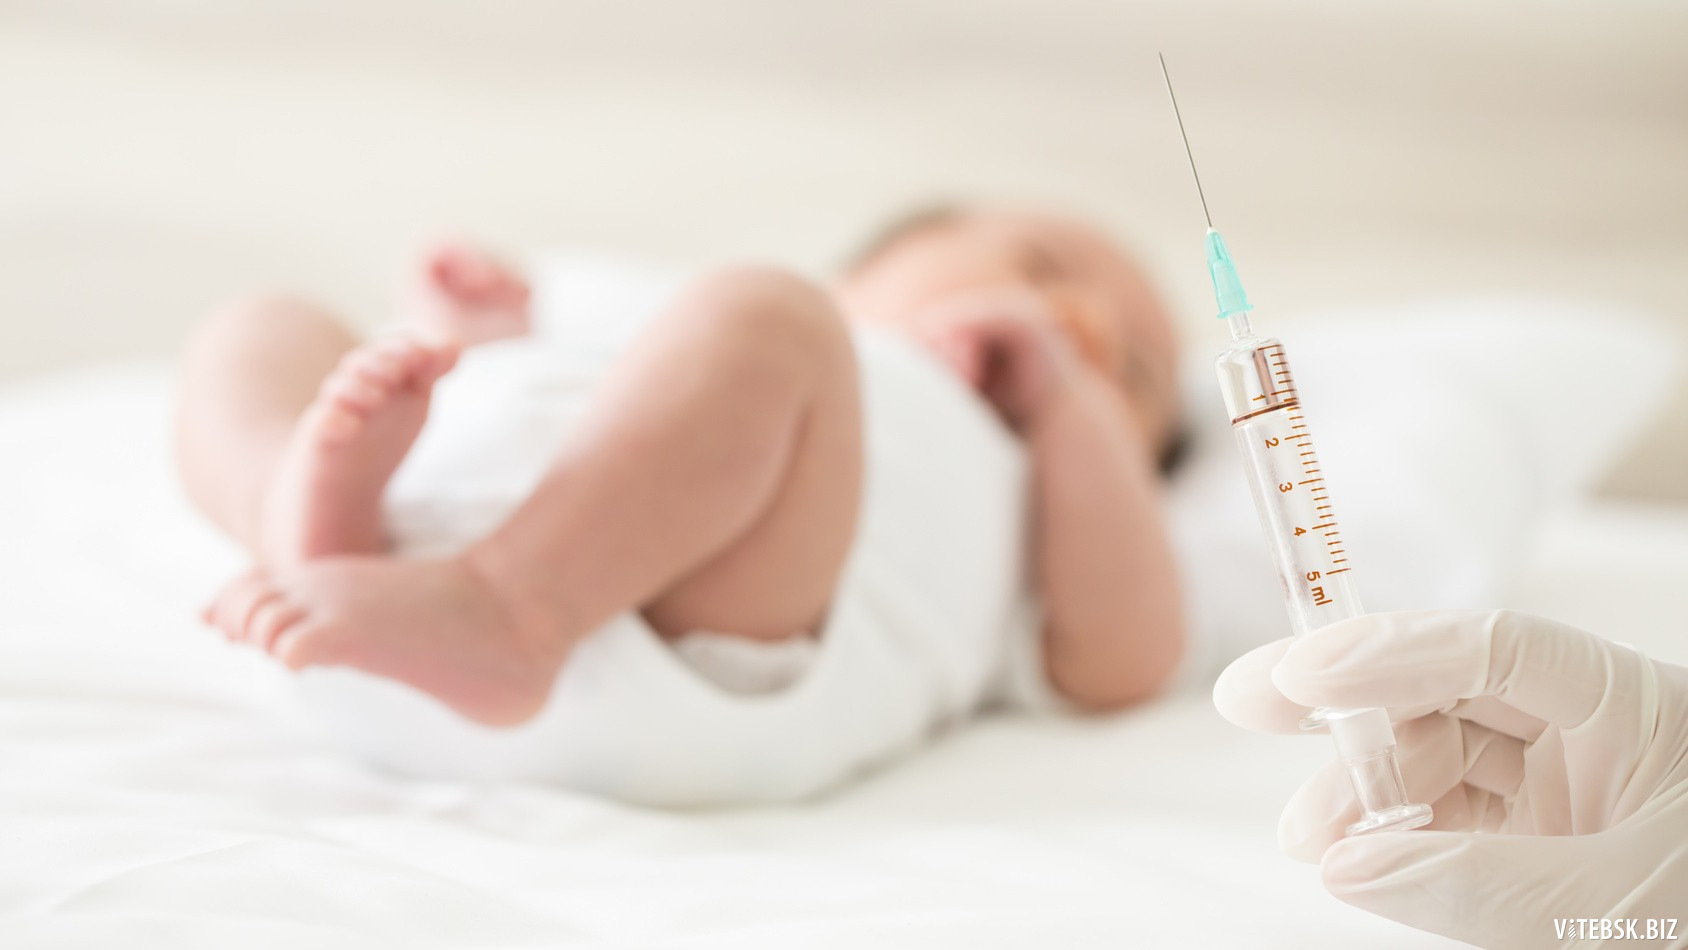 Гепатит в вакцинация новорожденных. Вакцина БЦЖ новорожденному. Вакцинирование новорожденного БЦЖ. Вакцинация новорожденных детей в роддоме. Прививки от гепатита новорожденным.